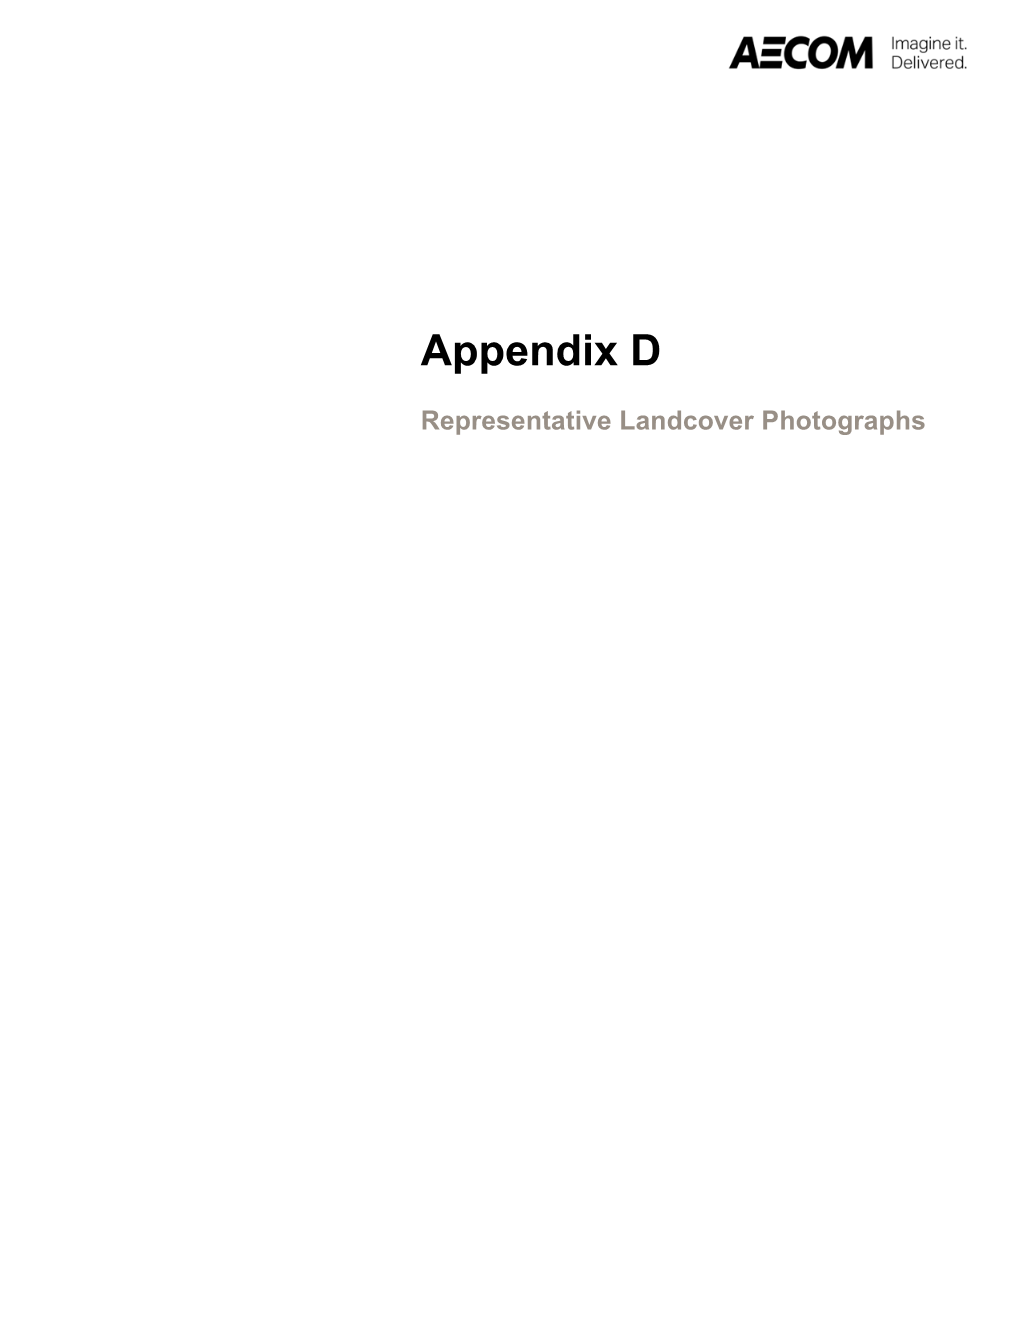 Appendix D, E and F